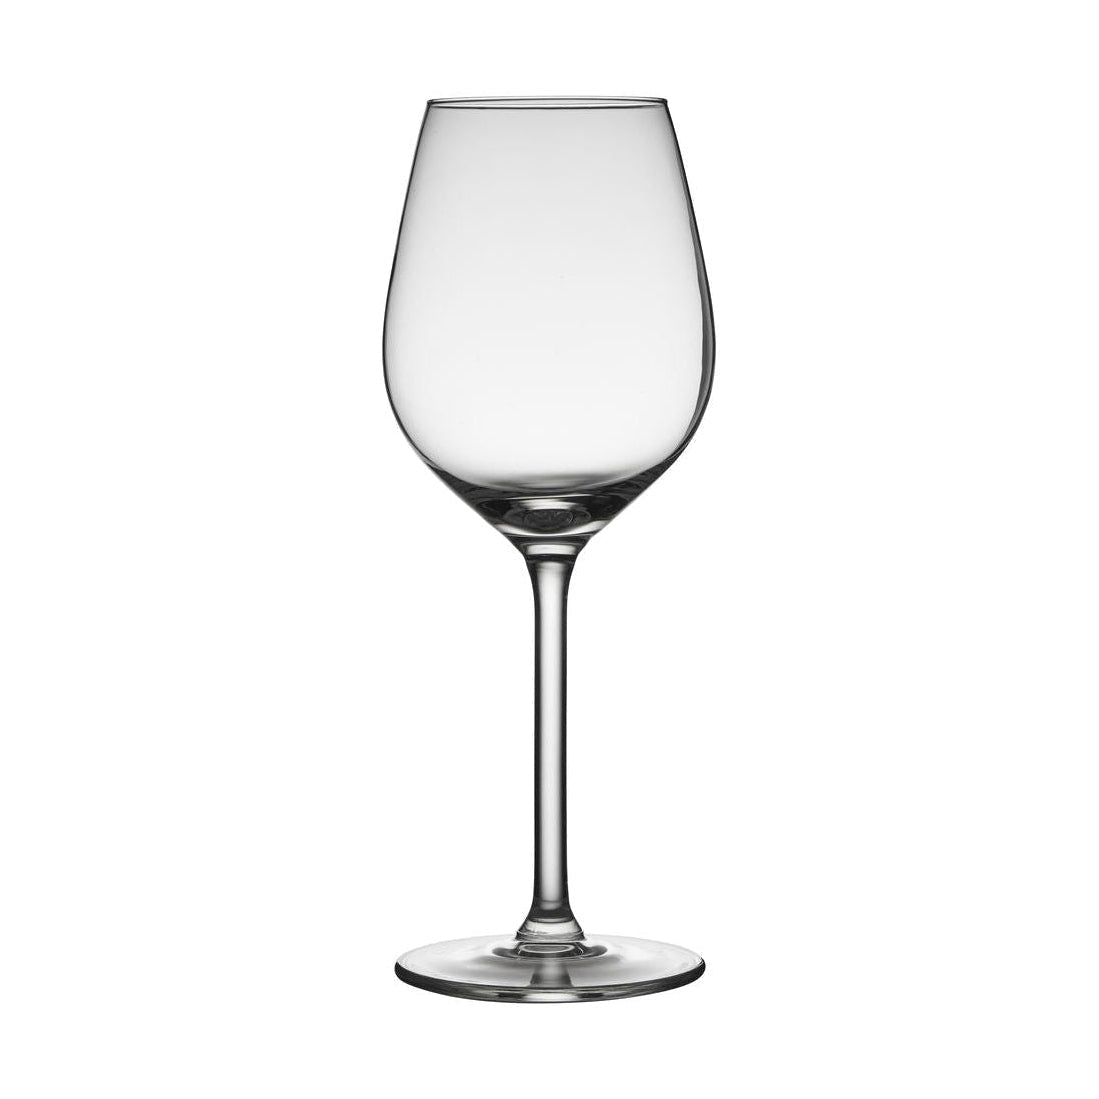 Lyngby Glas Juvel Hvidvinsglas 38 Cl, 4 Stk.